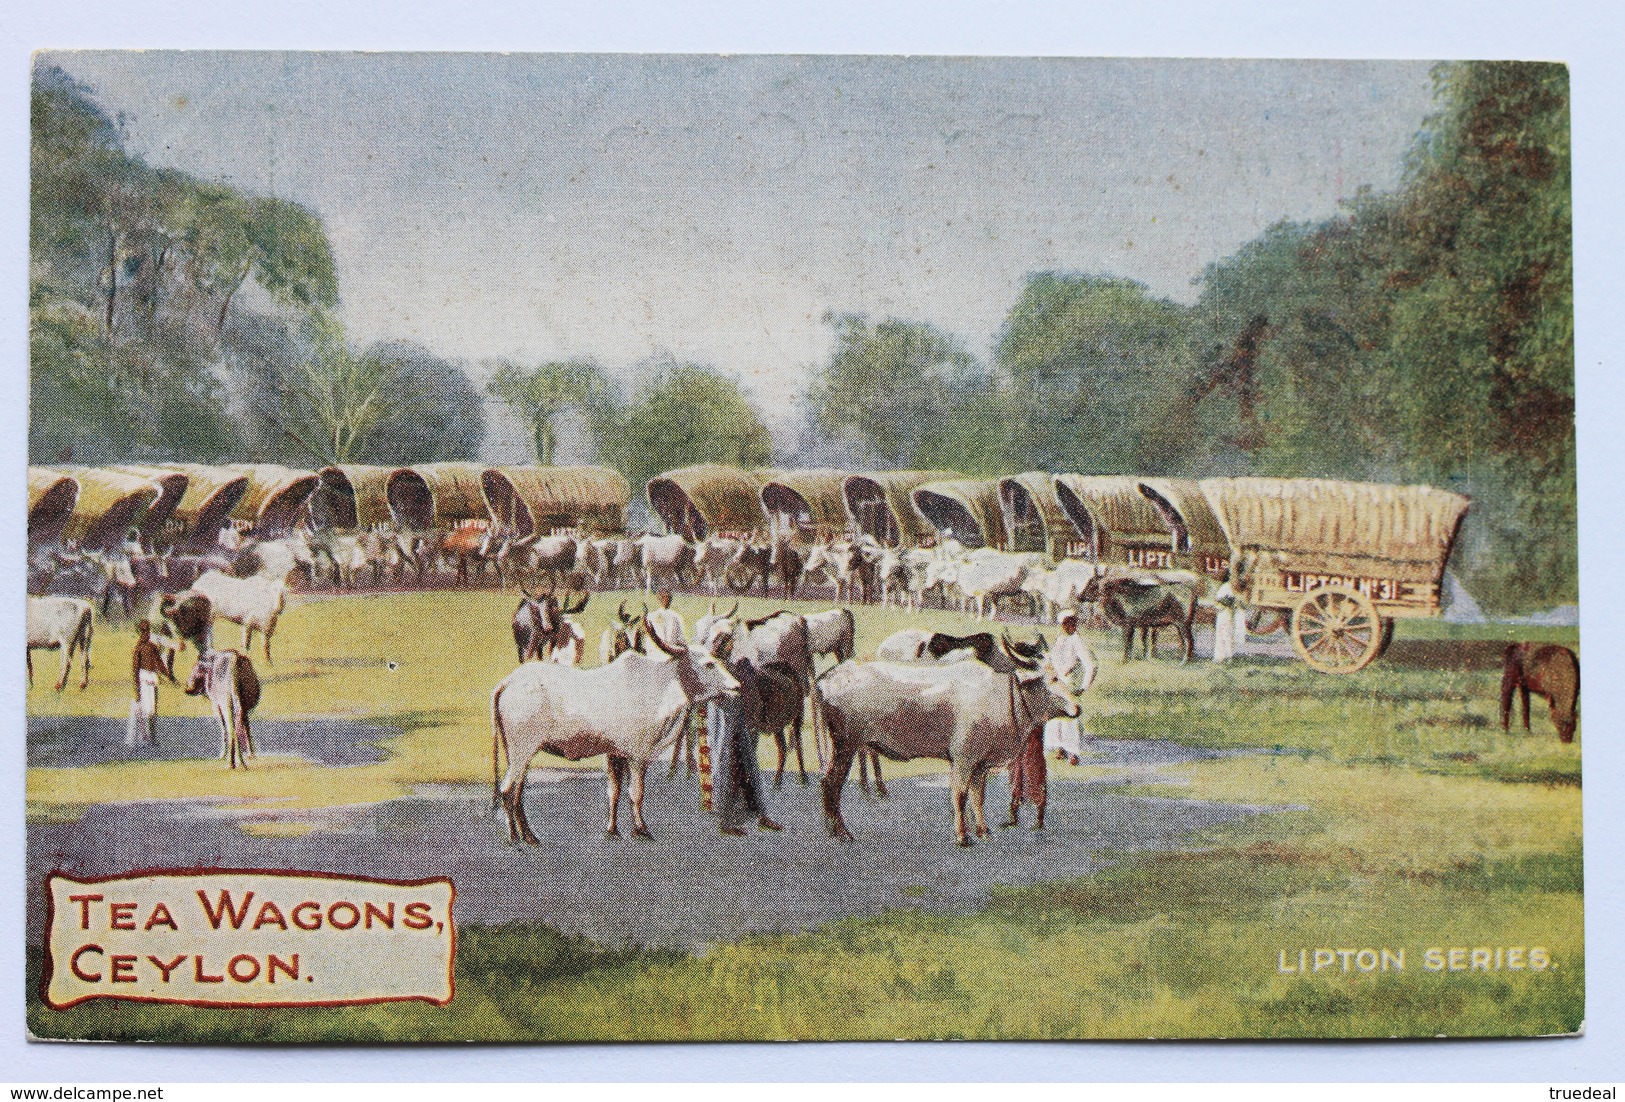 TEA WAGONS, CEYLON (Sri Lanka), Lipton Series Postcard, 1909 - Sri Lanka (Ceylon)